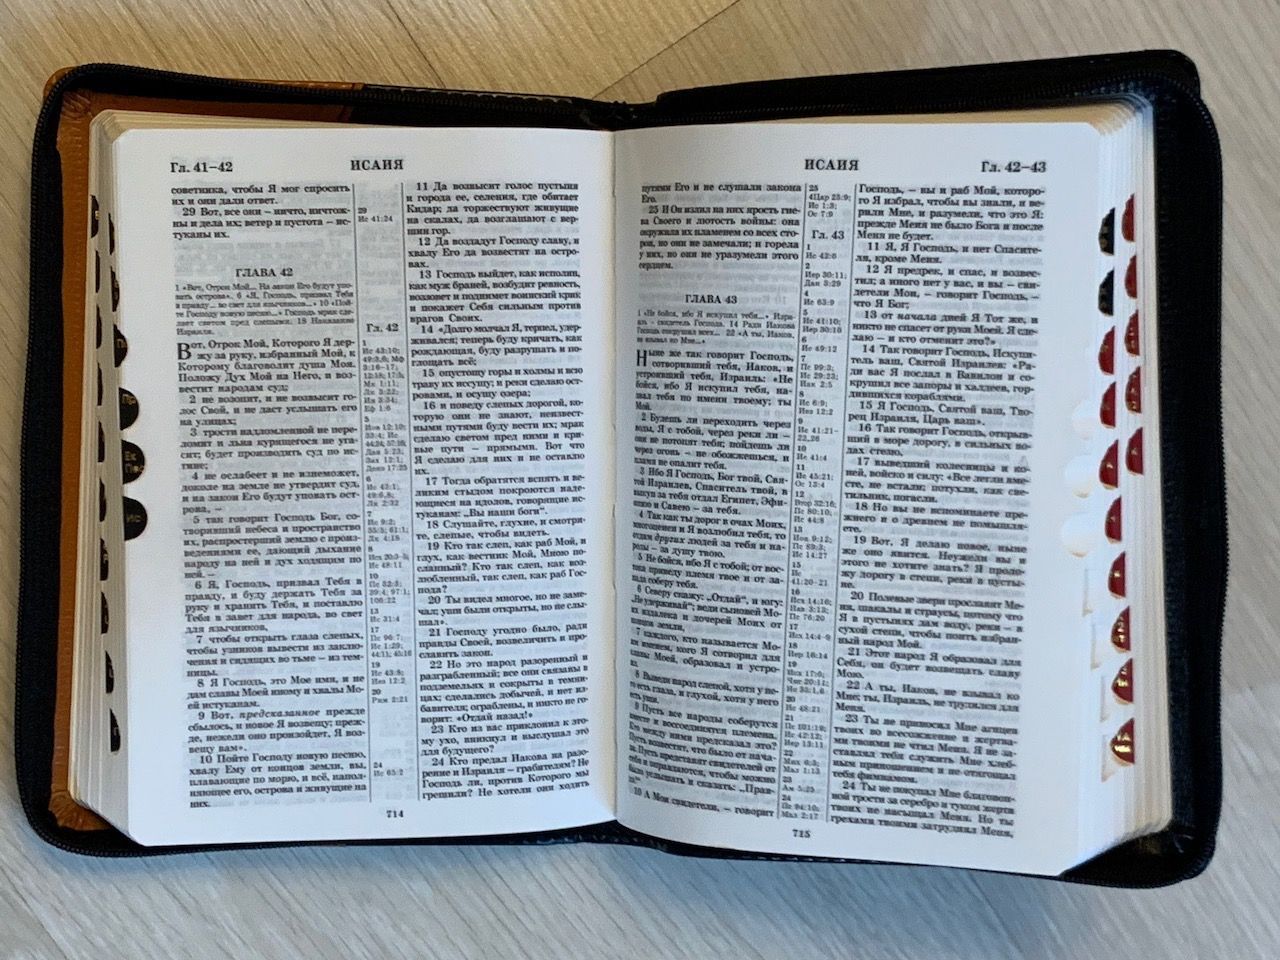 БИБЛИЯ 046DTzti формат, переплет из искусственной кожи на молнии с индексами, надпись золотом "Библия", цвет черный/светло-коричневый полукругом, средний формат, 132*182 мм, цветные карты, шрифт 12 кегель